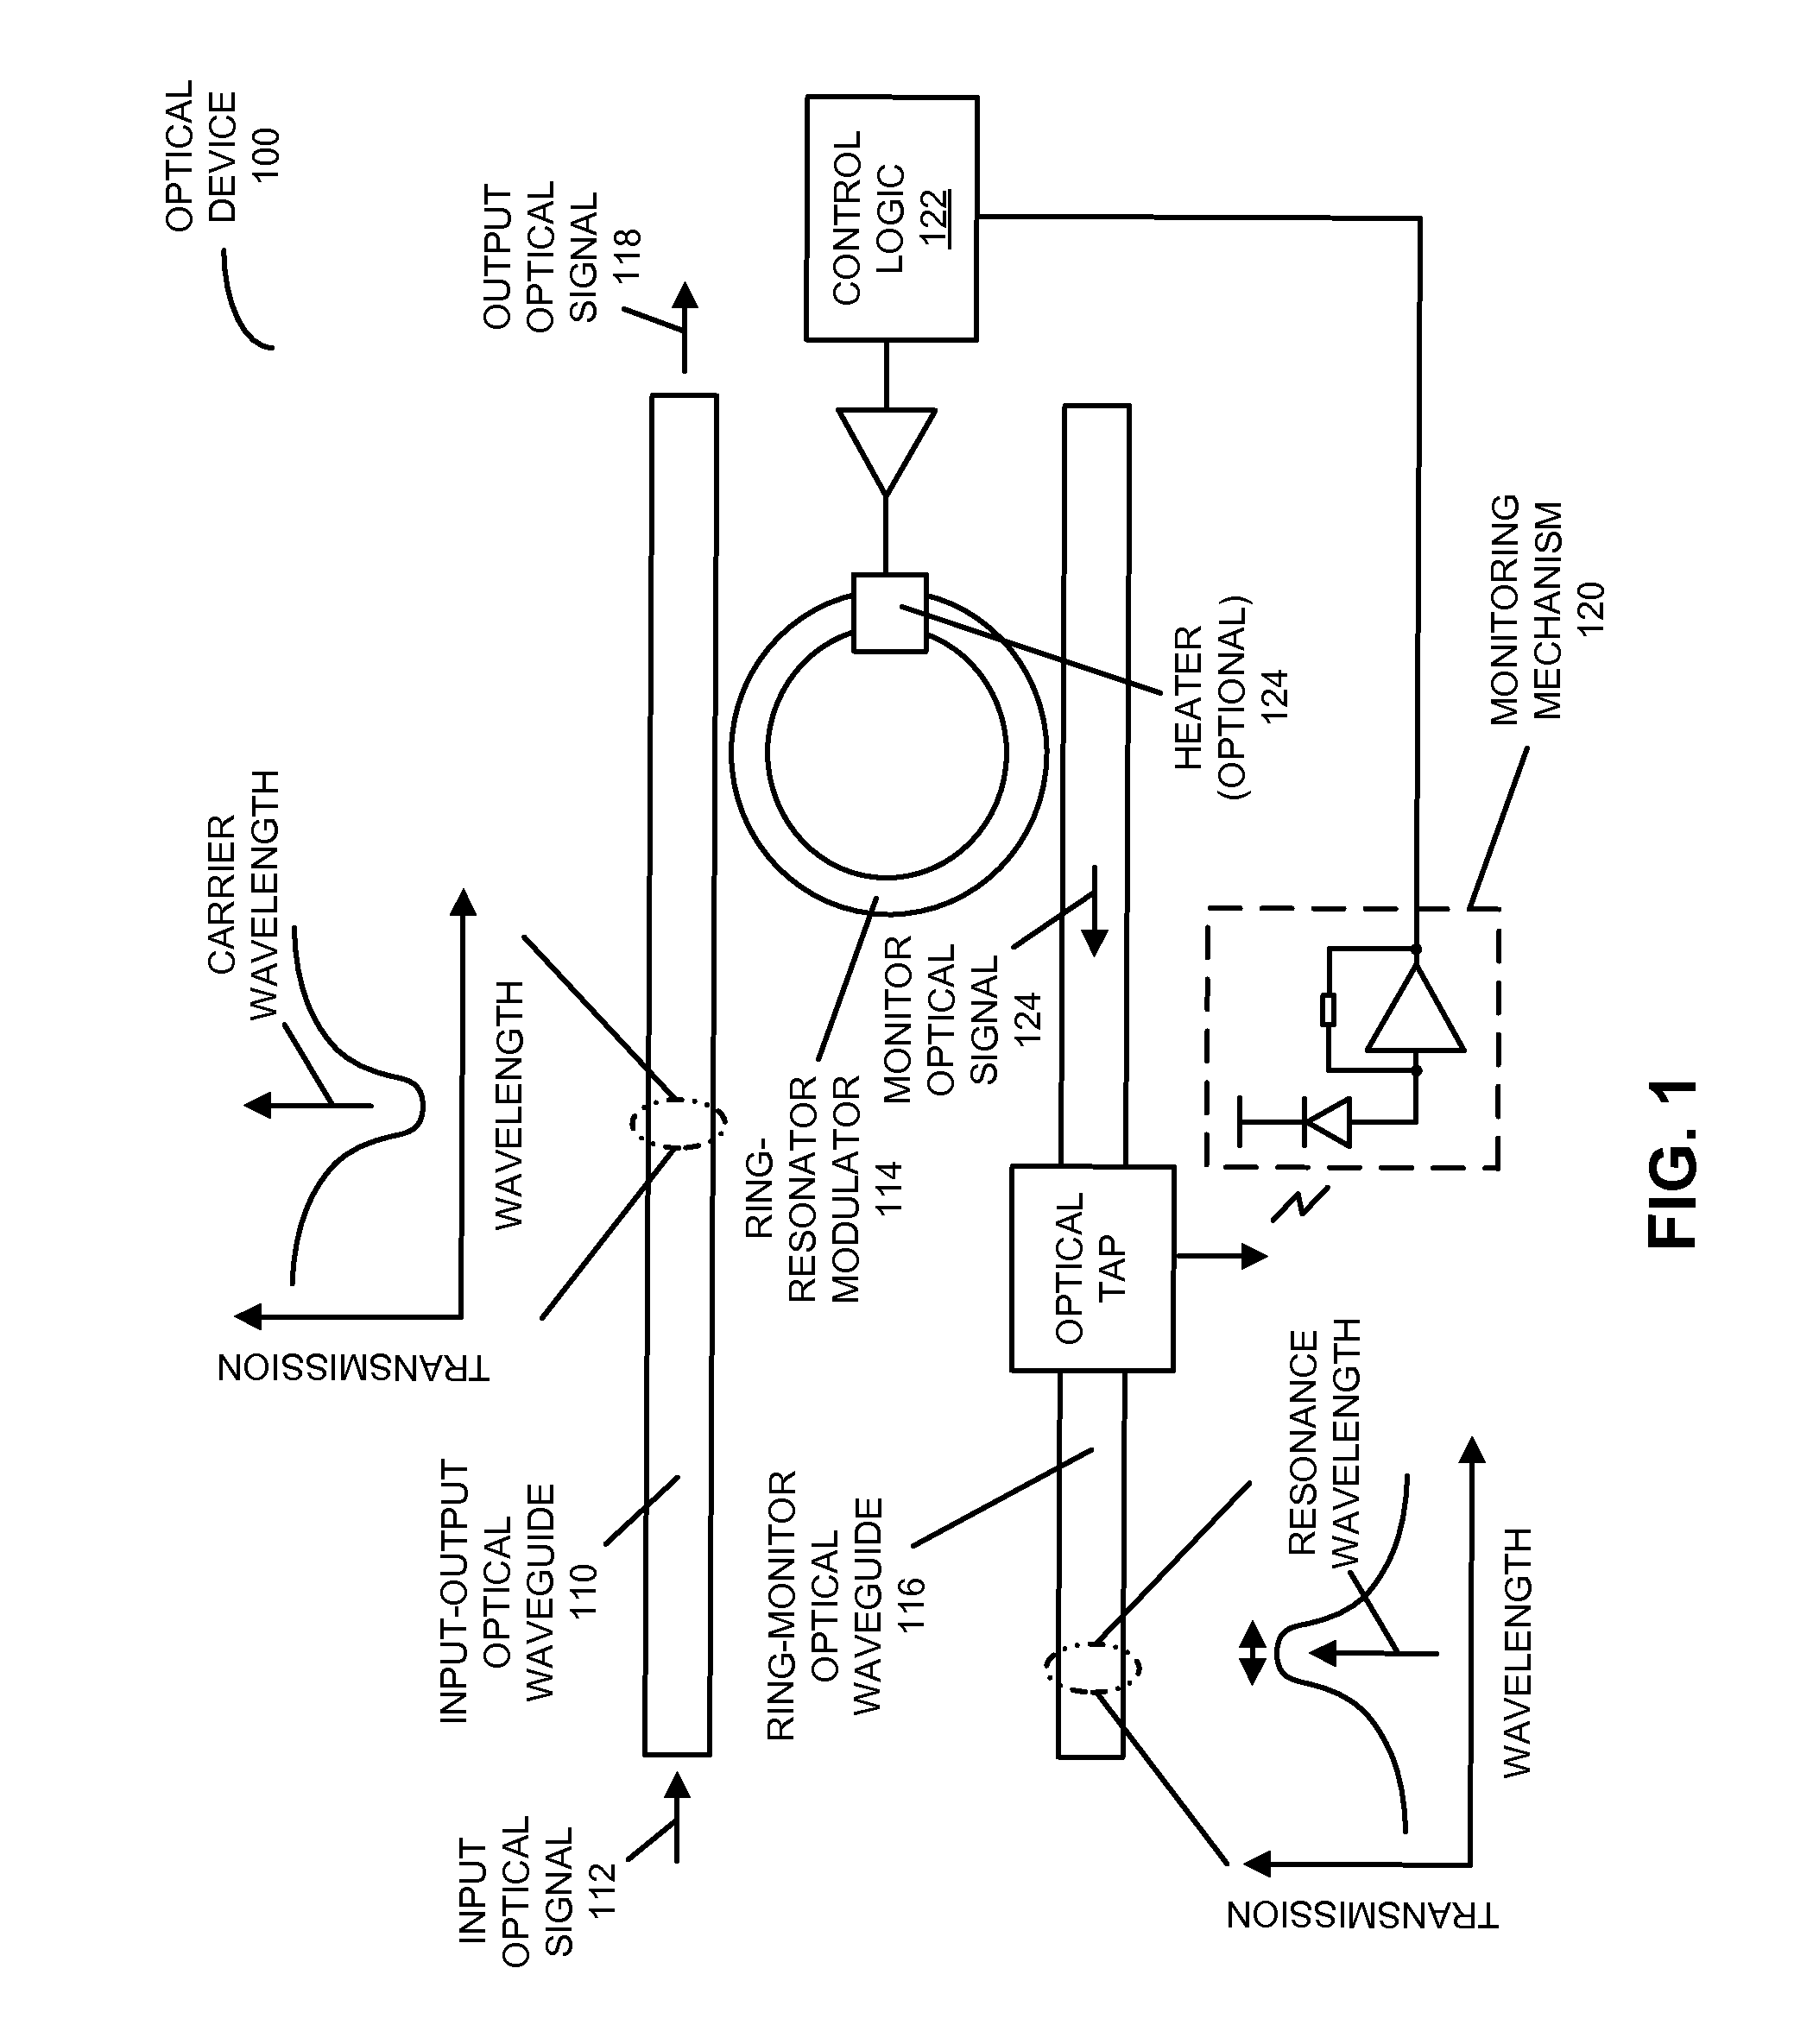 In-situ ring-resonator-modulator calibration